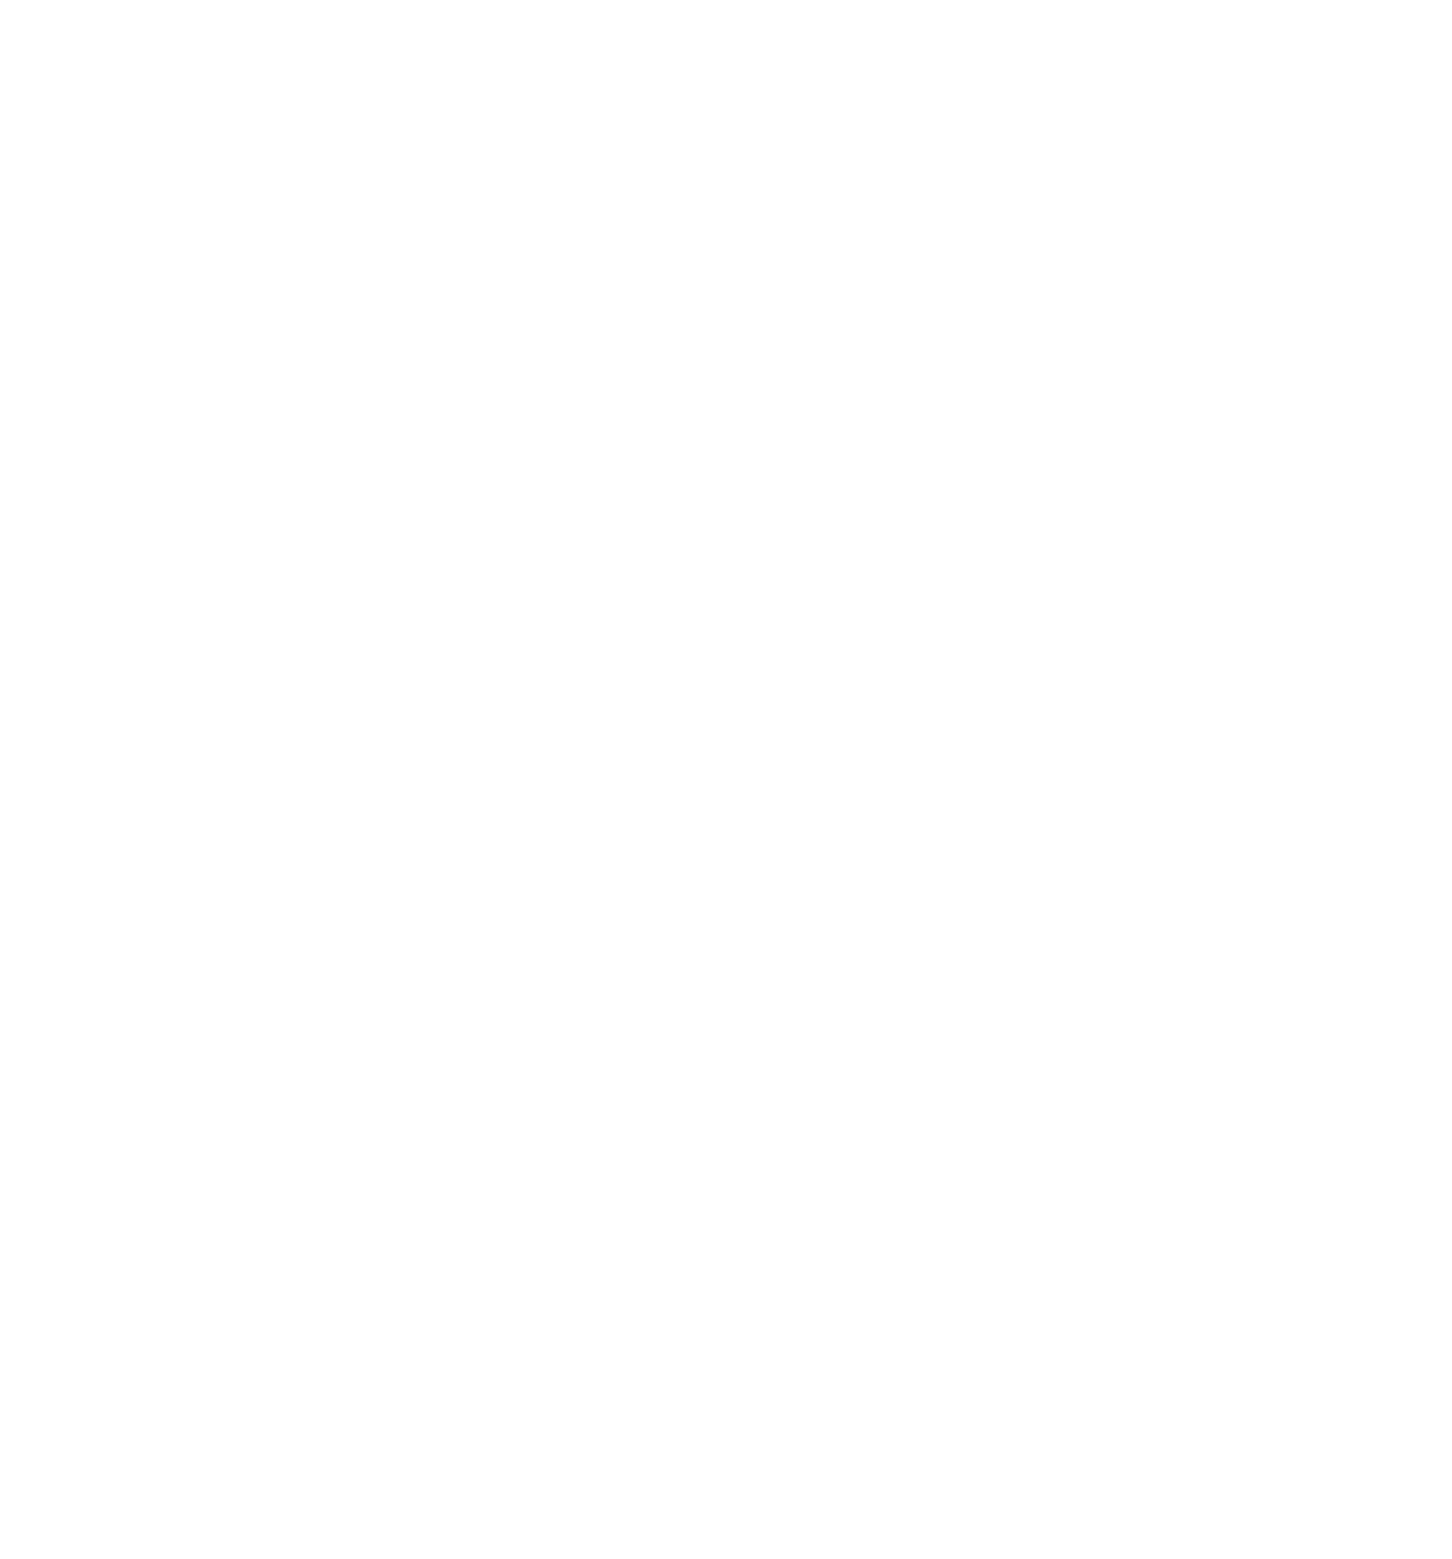 Cementir logo pour fonds sombres (PNG transparent)